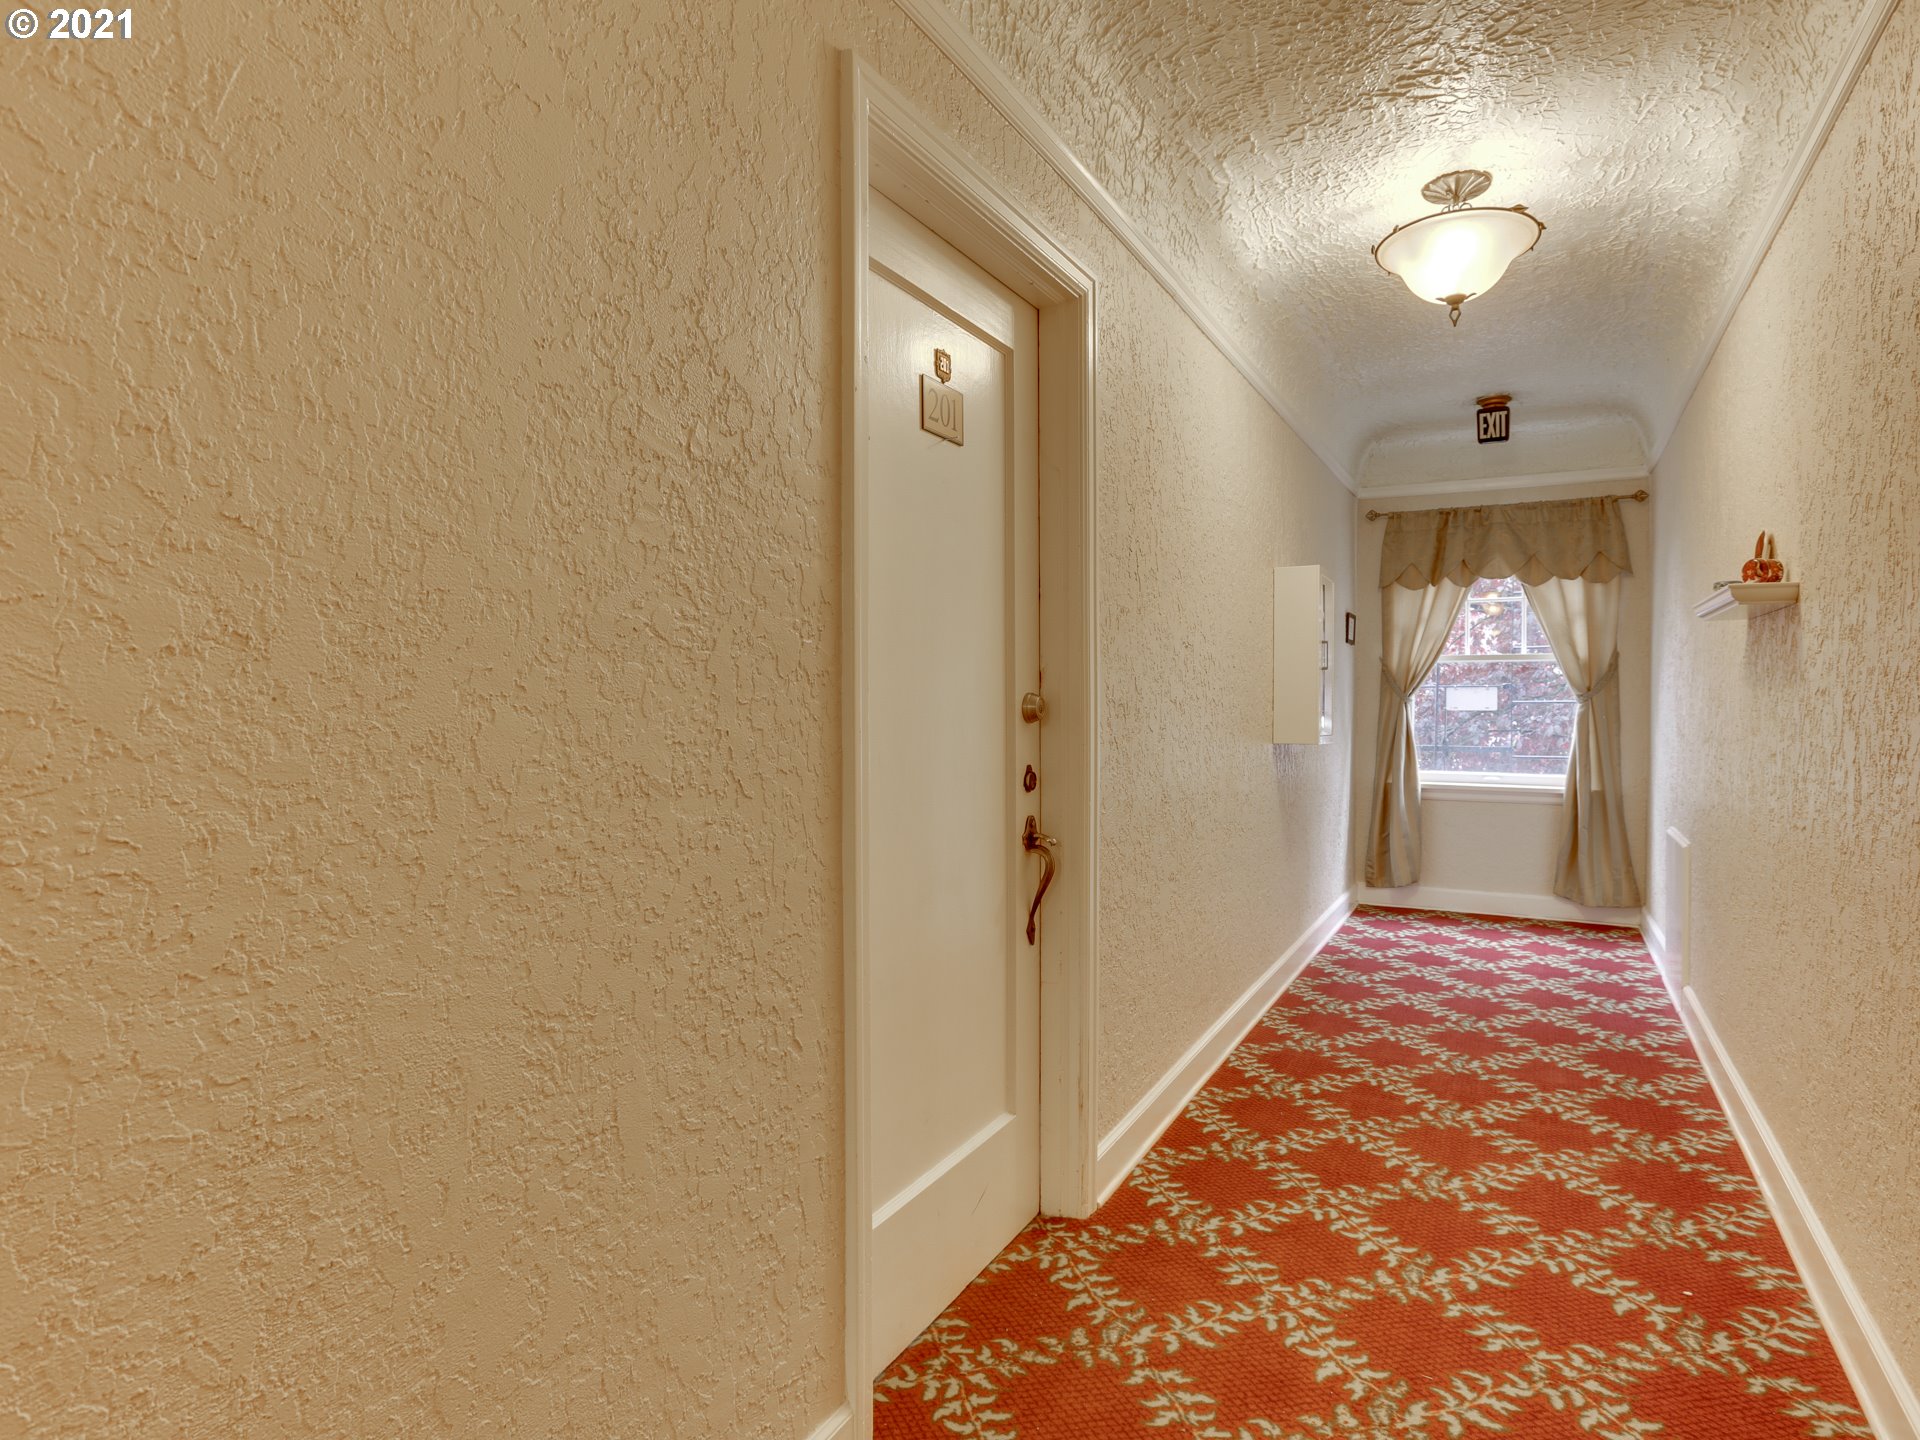 Photo #8 Hallway